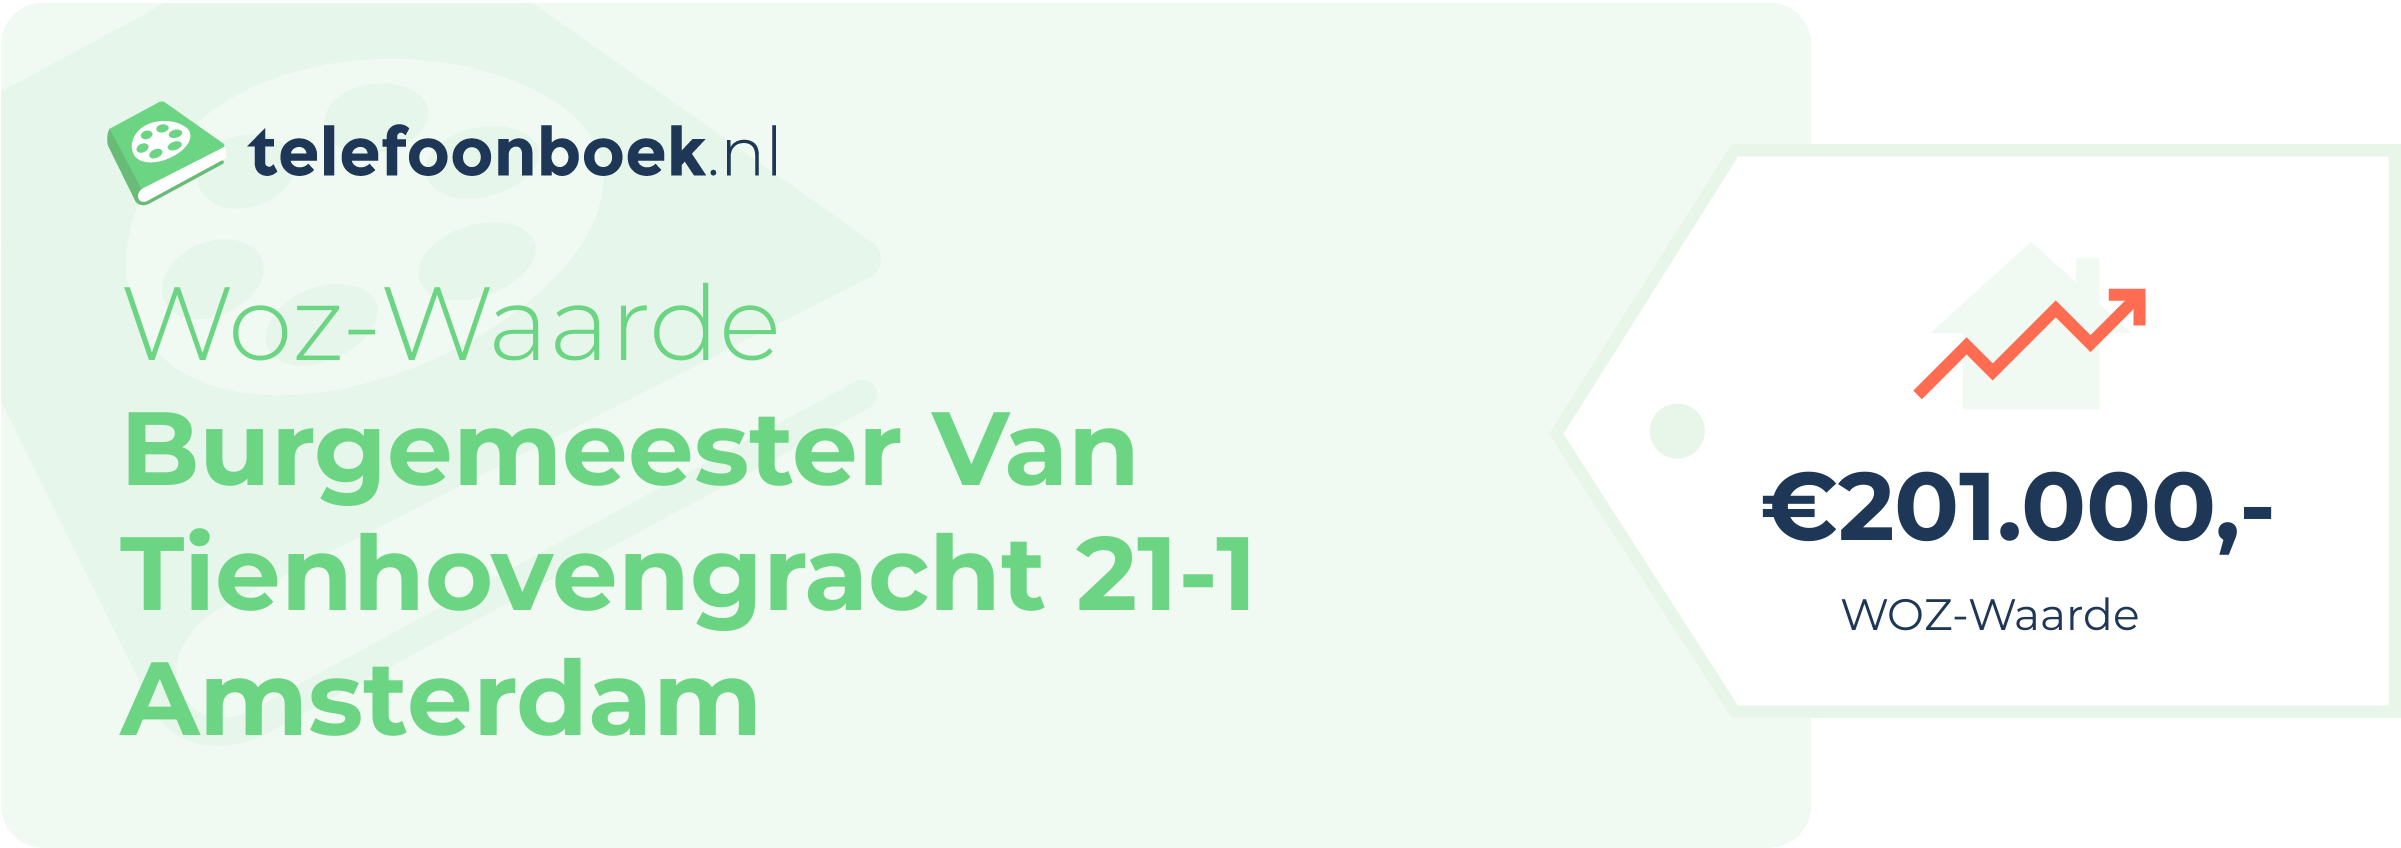 WOZ-waarde Burgemeester Van Tienhovengracht 21-1 Amsterdam